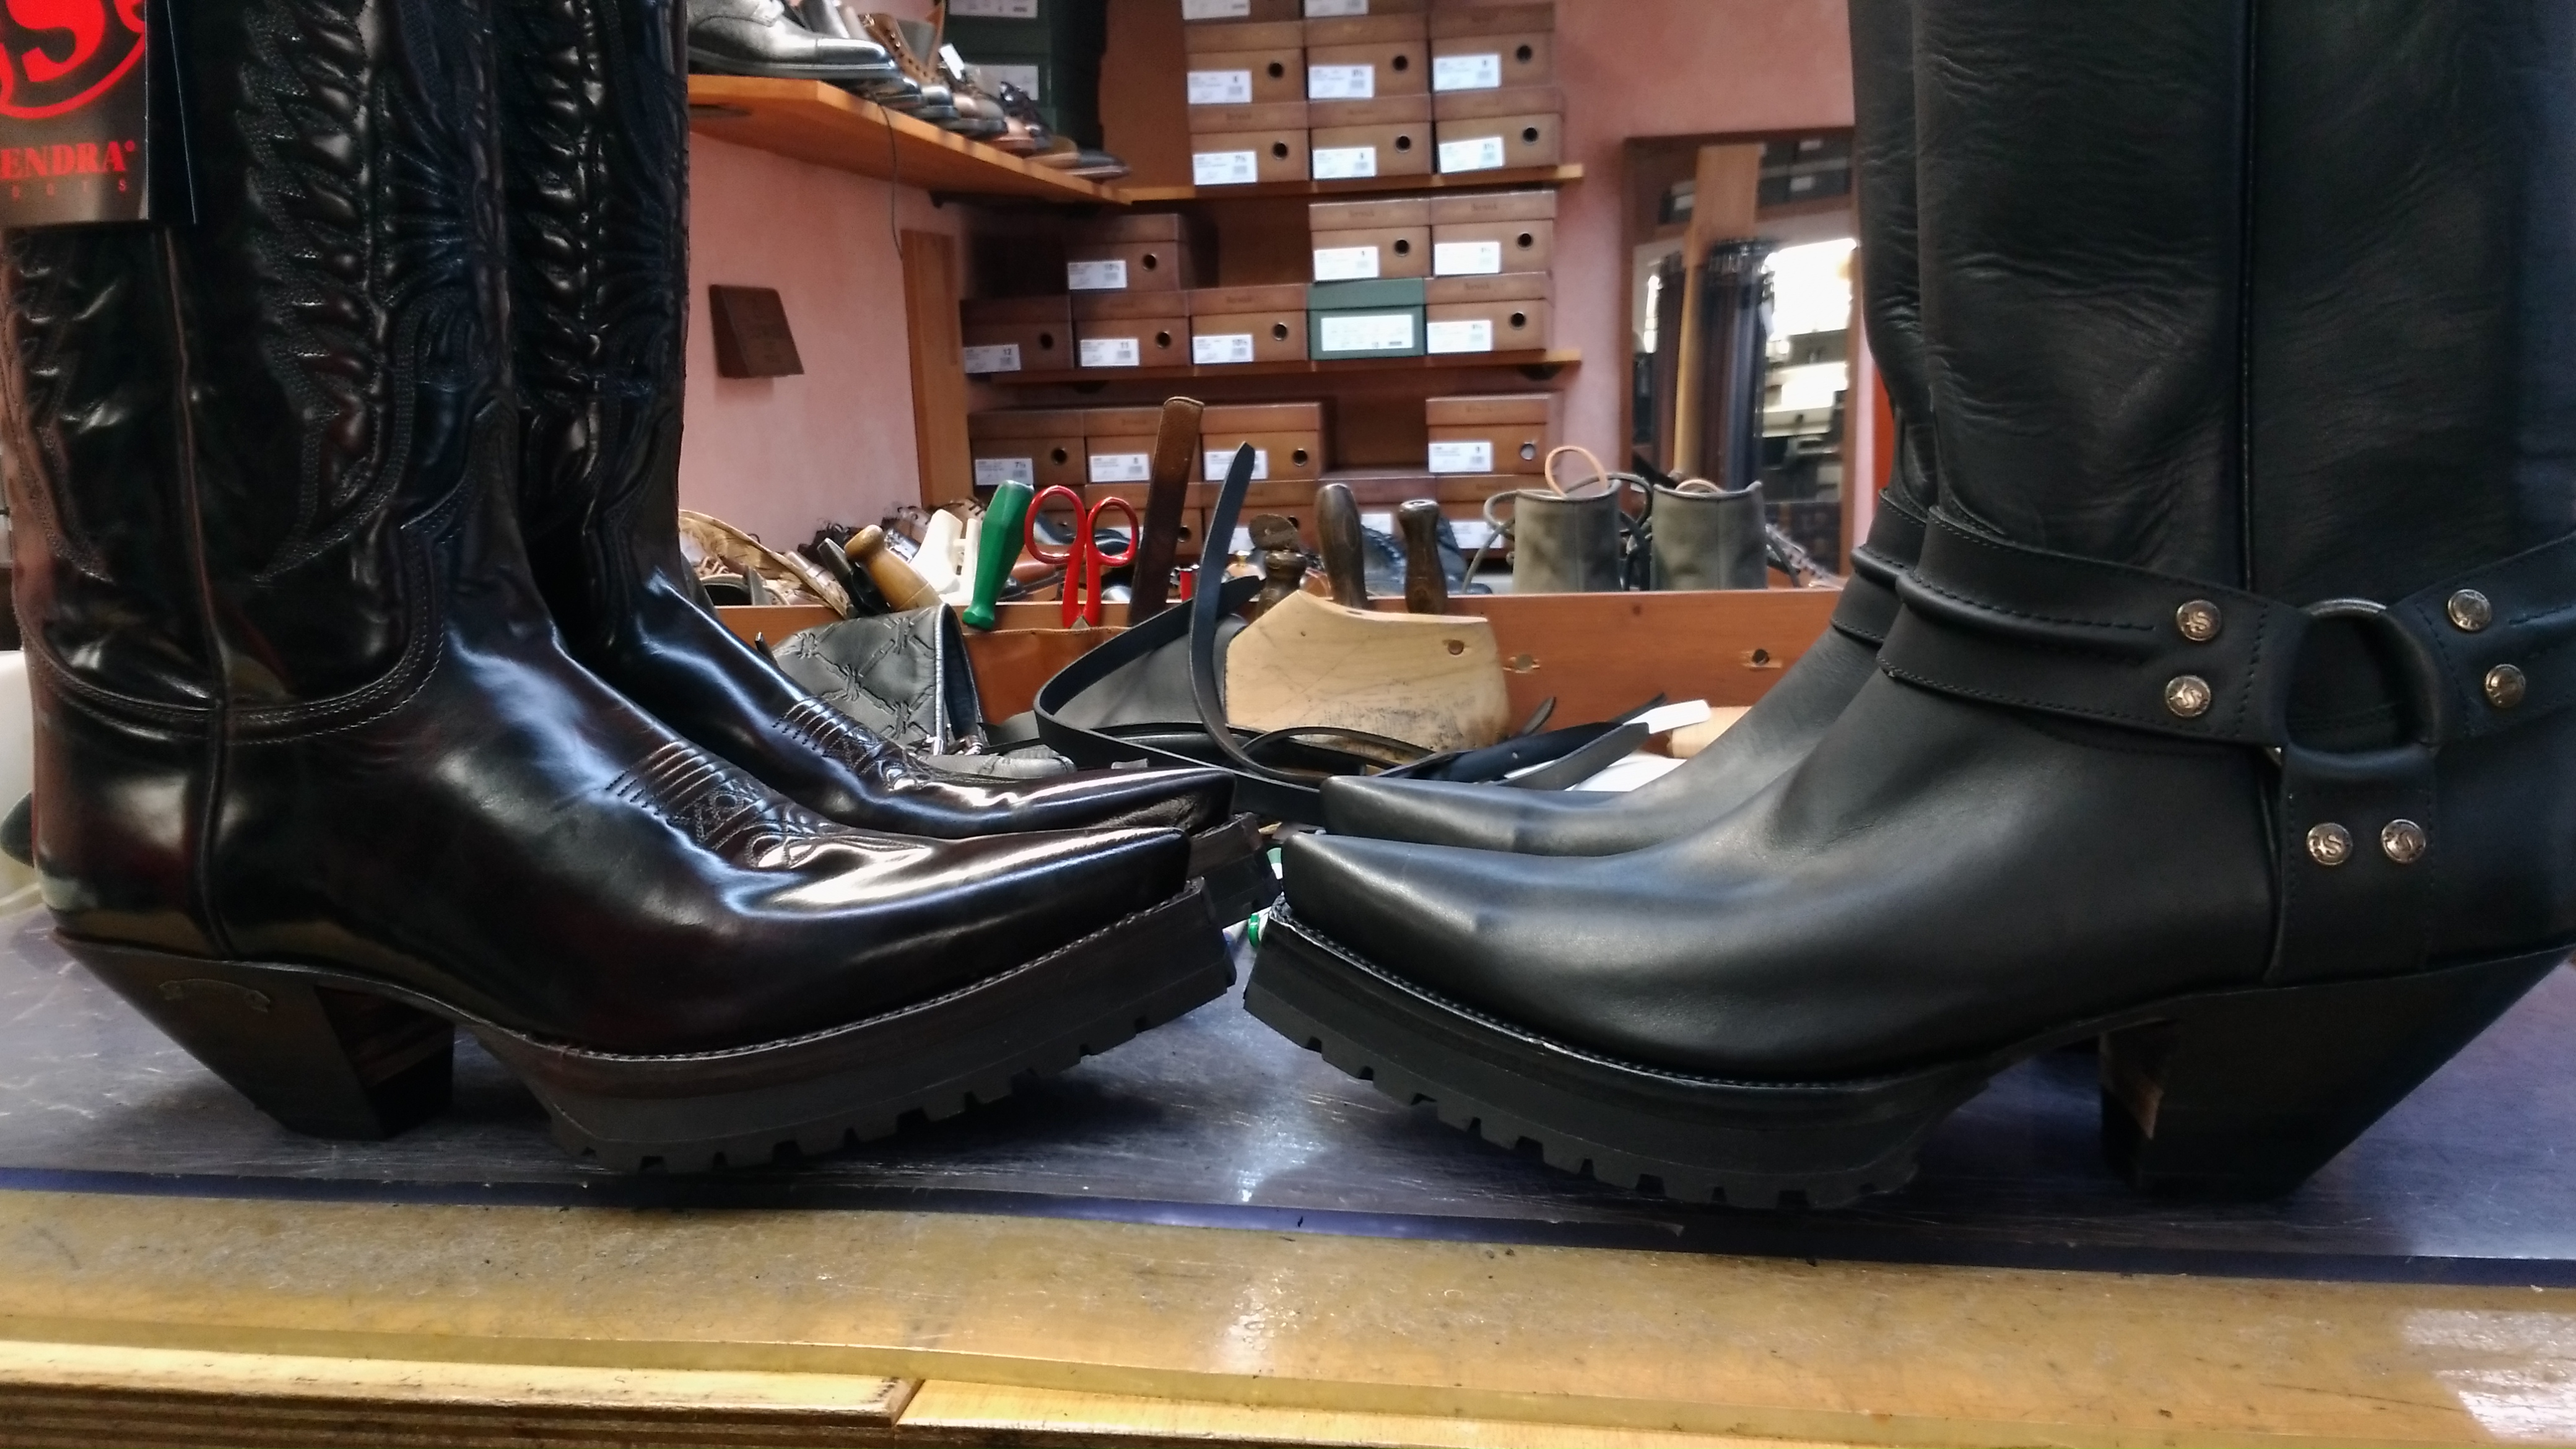 Vibram Profilsohle an Boots ,voll 18 -22mm & Absatz – full 18 – 22mm &  Higher Heel – Fresh Shoes